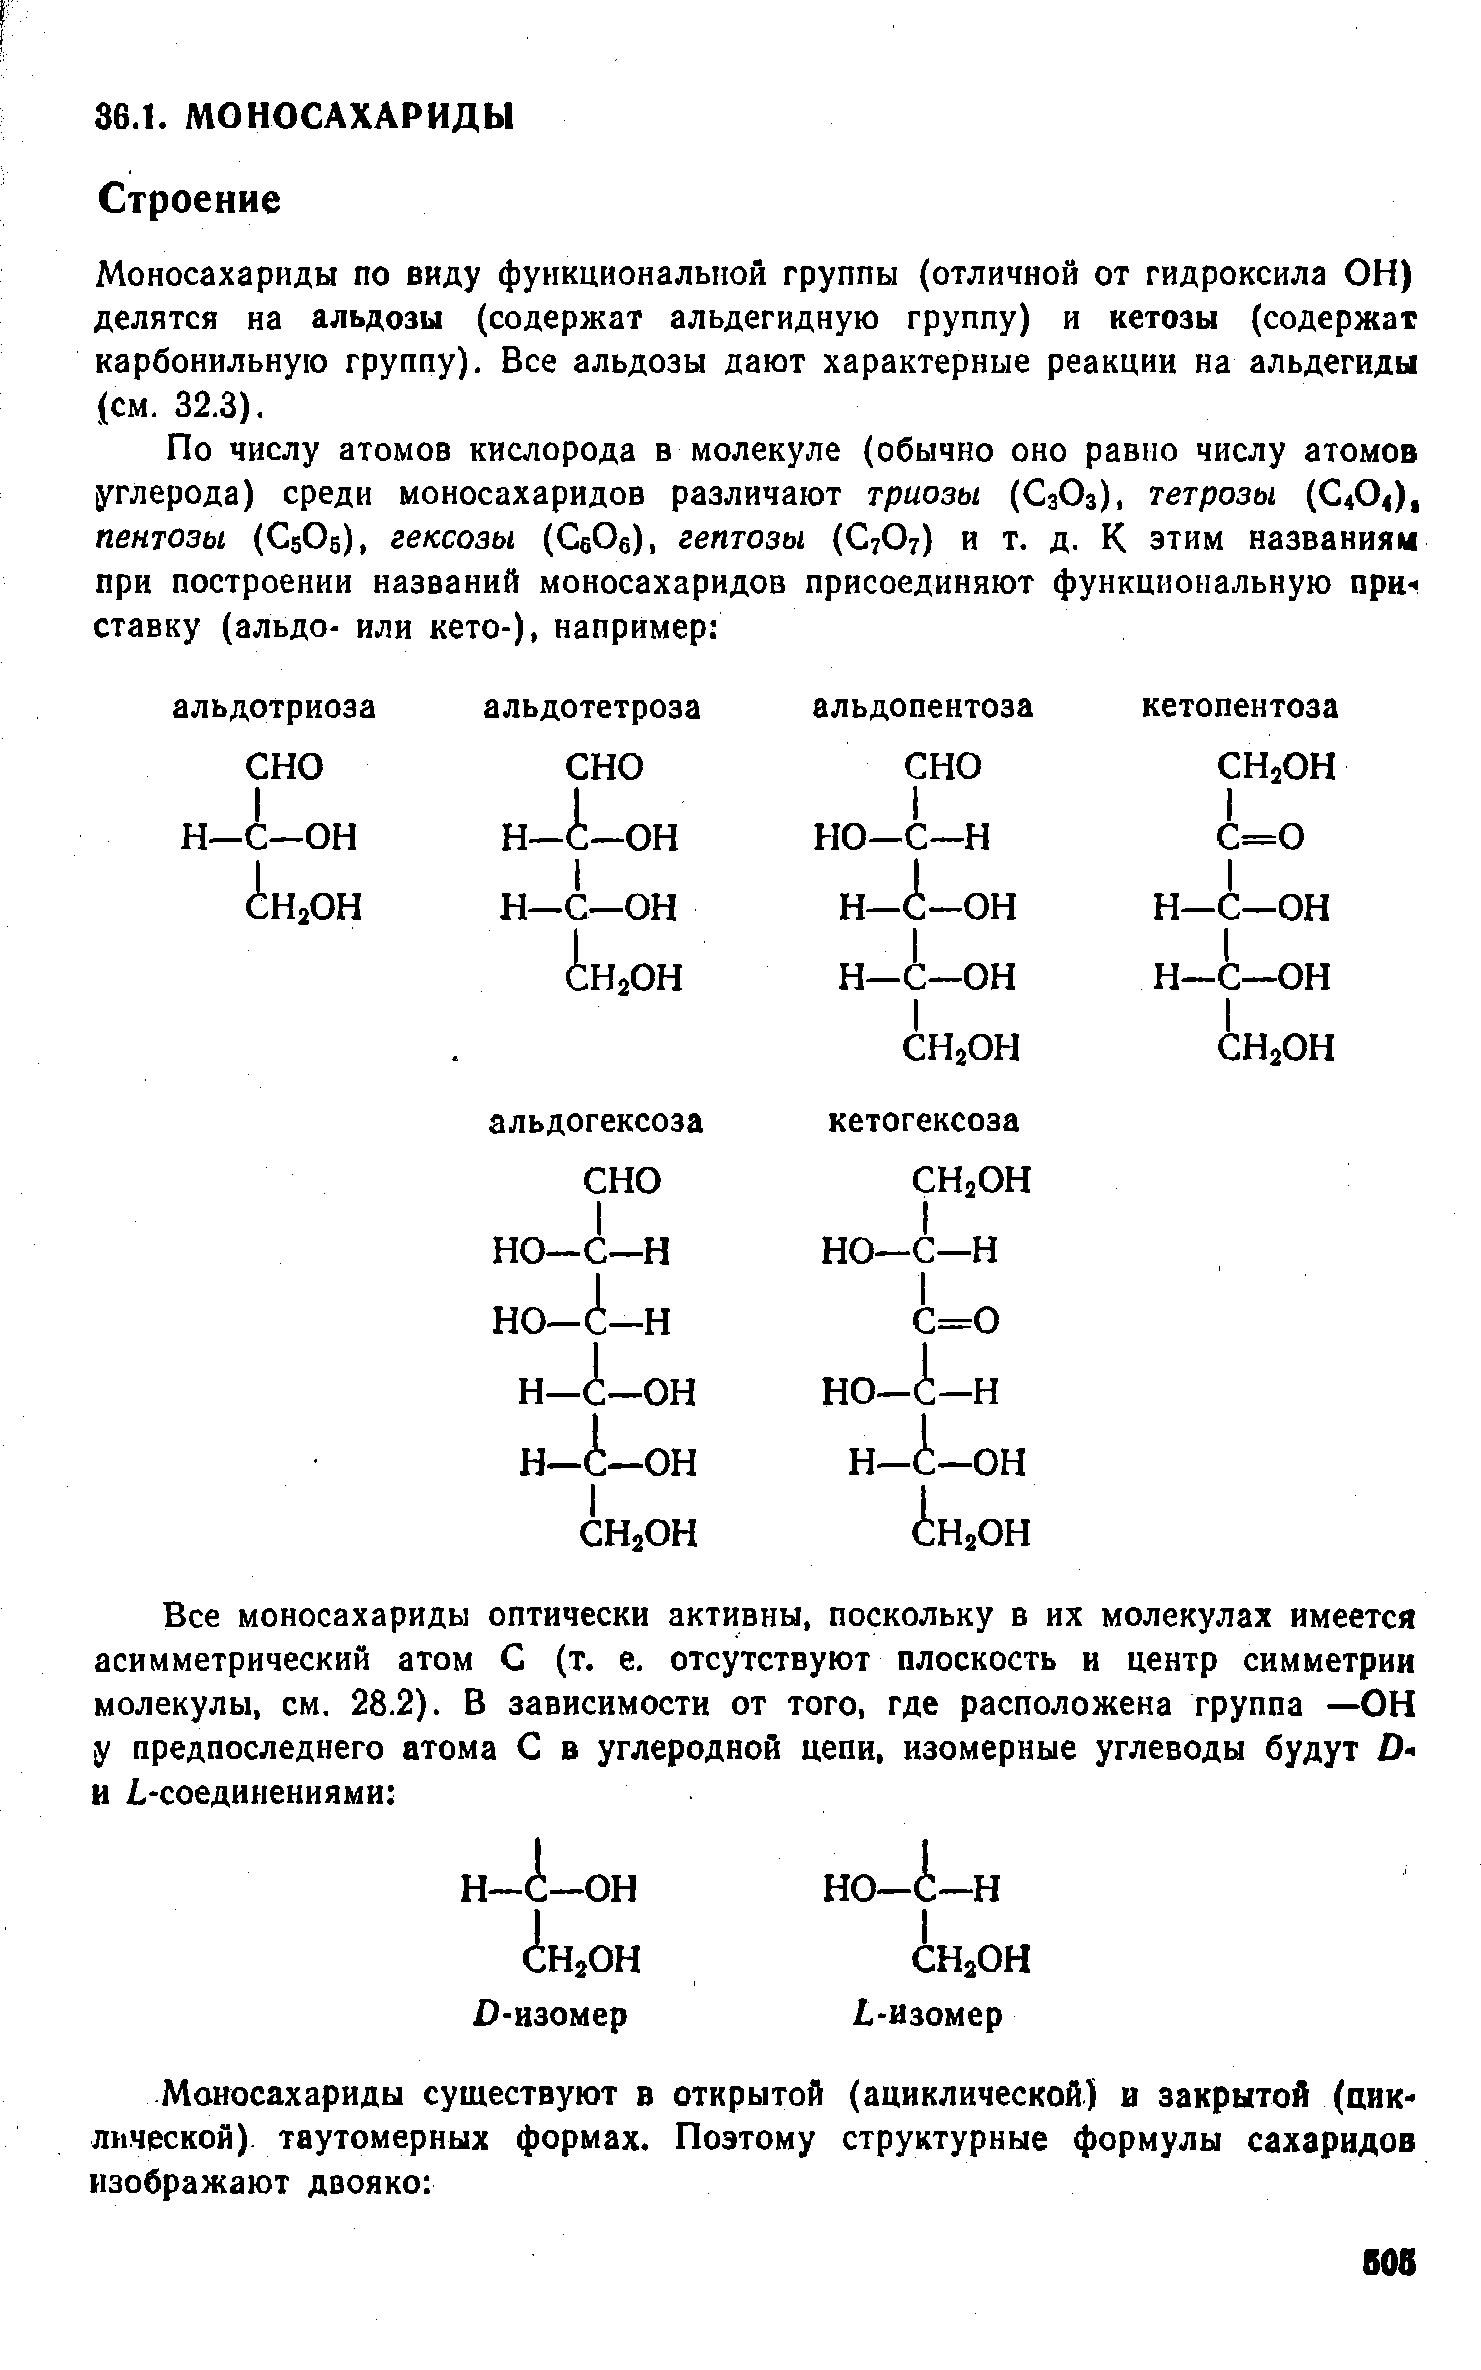 Моносахариды по виду функциональной группы (отличной от гидроксила ОН) делятся на альдозы (содержат альдегидную группу) и кетозы (содержат карбонильную группу). Все альдозы дают характерные реакции на альдегиды (см. 32.3).